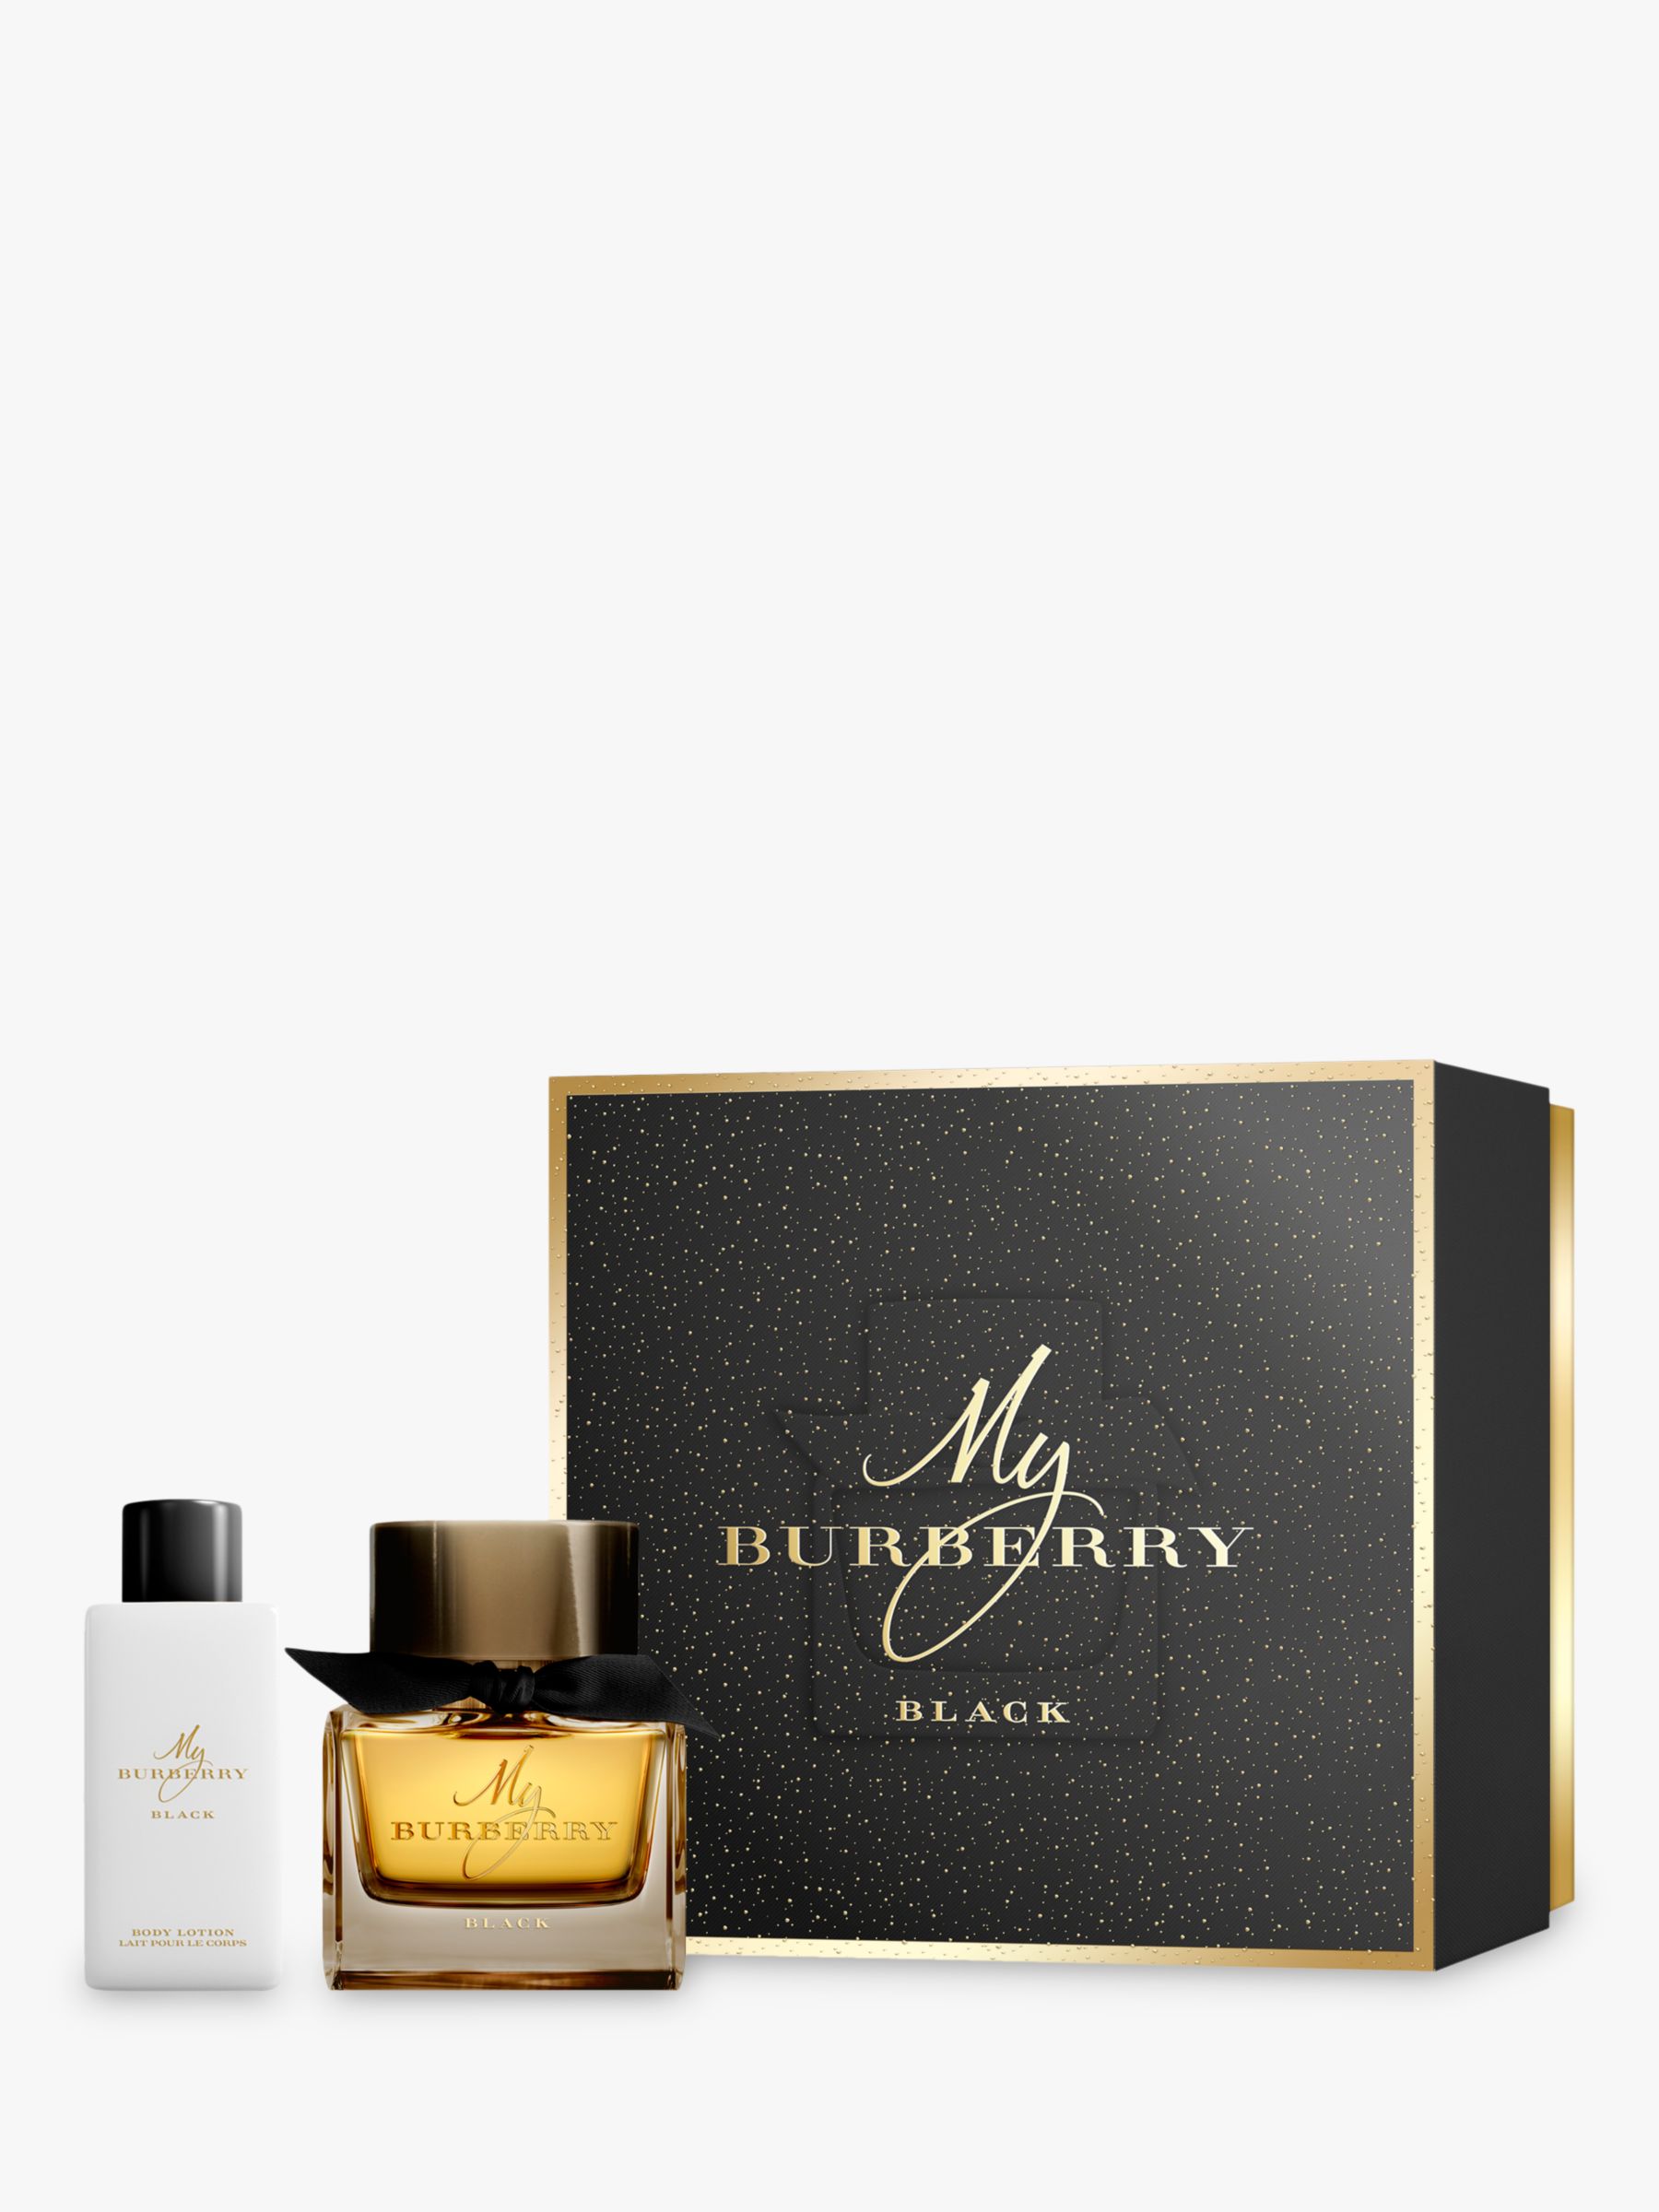 My Burberry Black 50ml Eau de Parfum Fragrance Gift Set